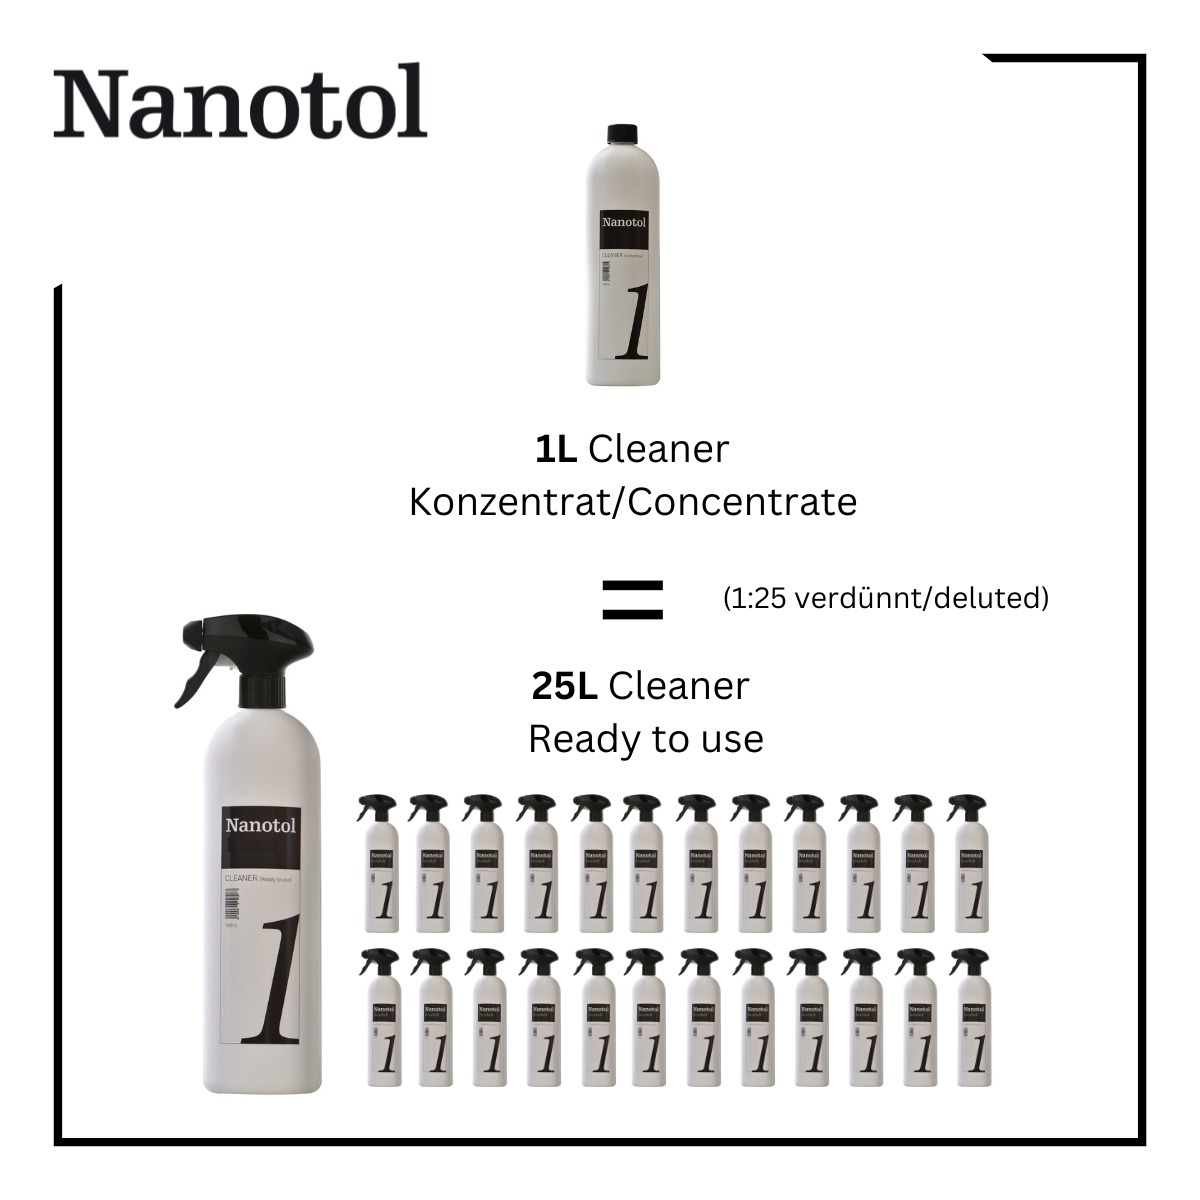 1 Liter Nanotol Sanitär Konzentrat entsprechen 25 Liter verdünnten Badreinigers